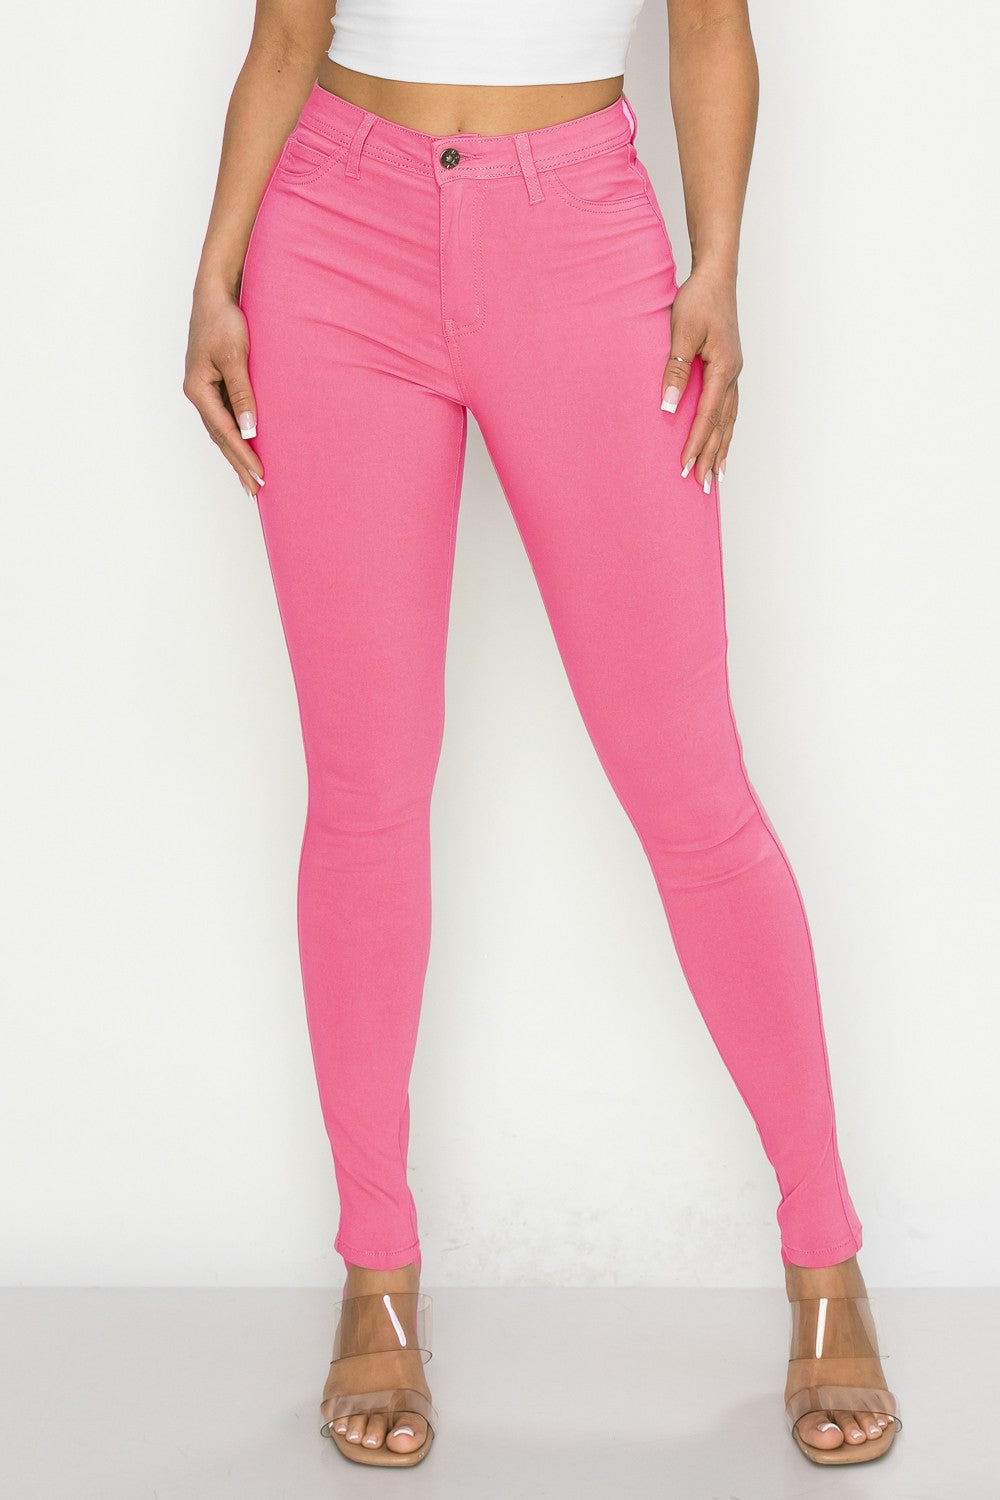 Barbie pink skinny jeans